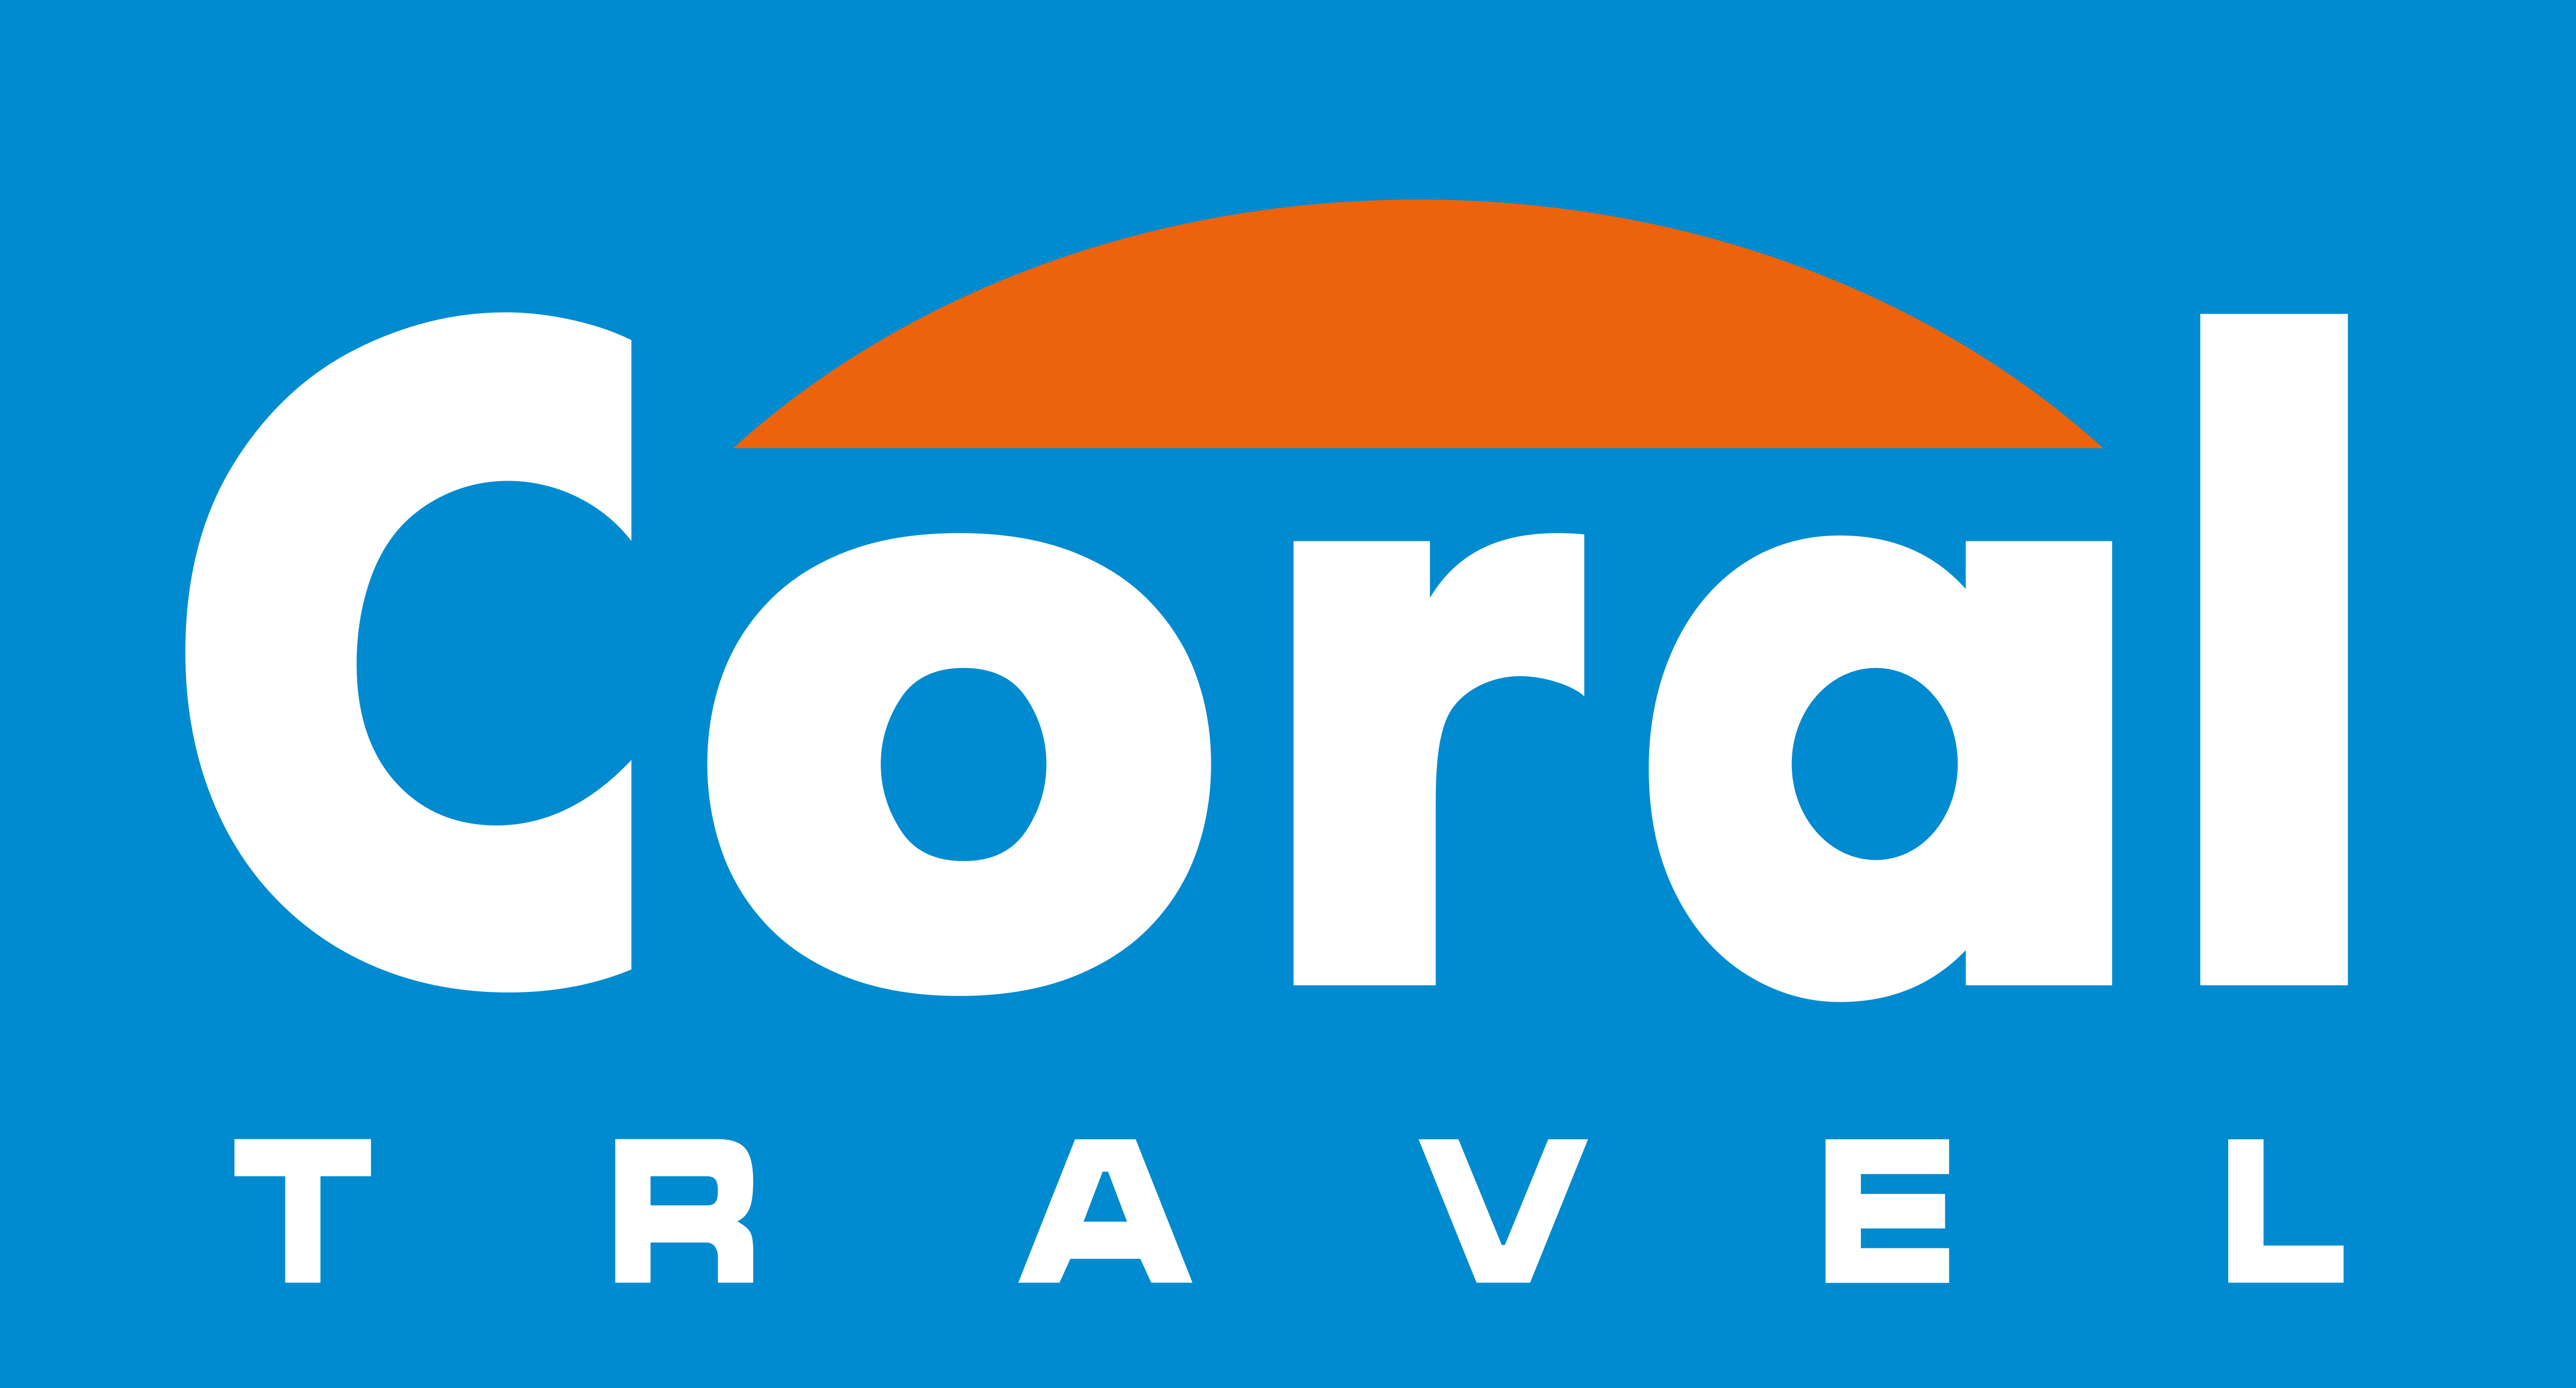 Корал тревел туристы. Корал логотип туроператор. Coral Travel логотип. Корал Тревел турагентство логотип. Туристическая фирма “Coral Travel”..